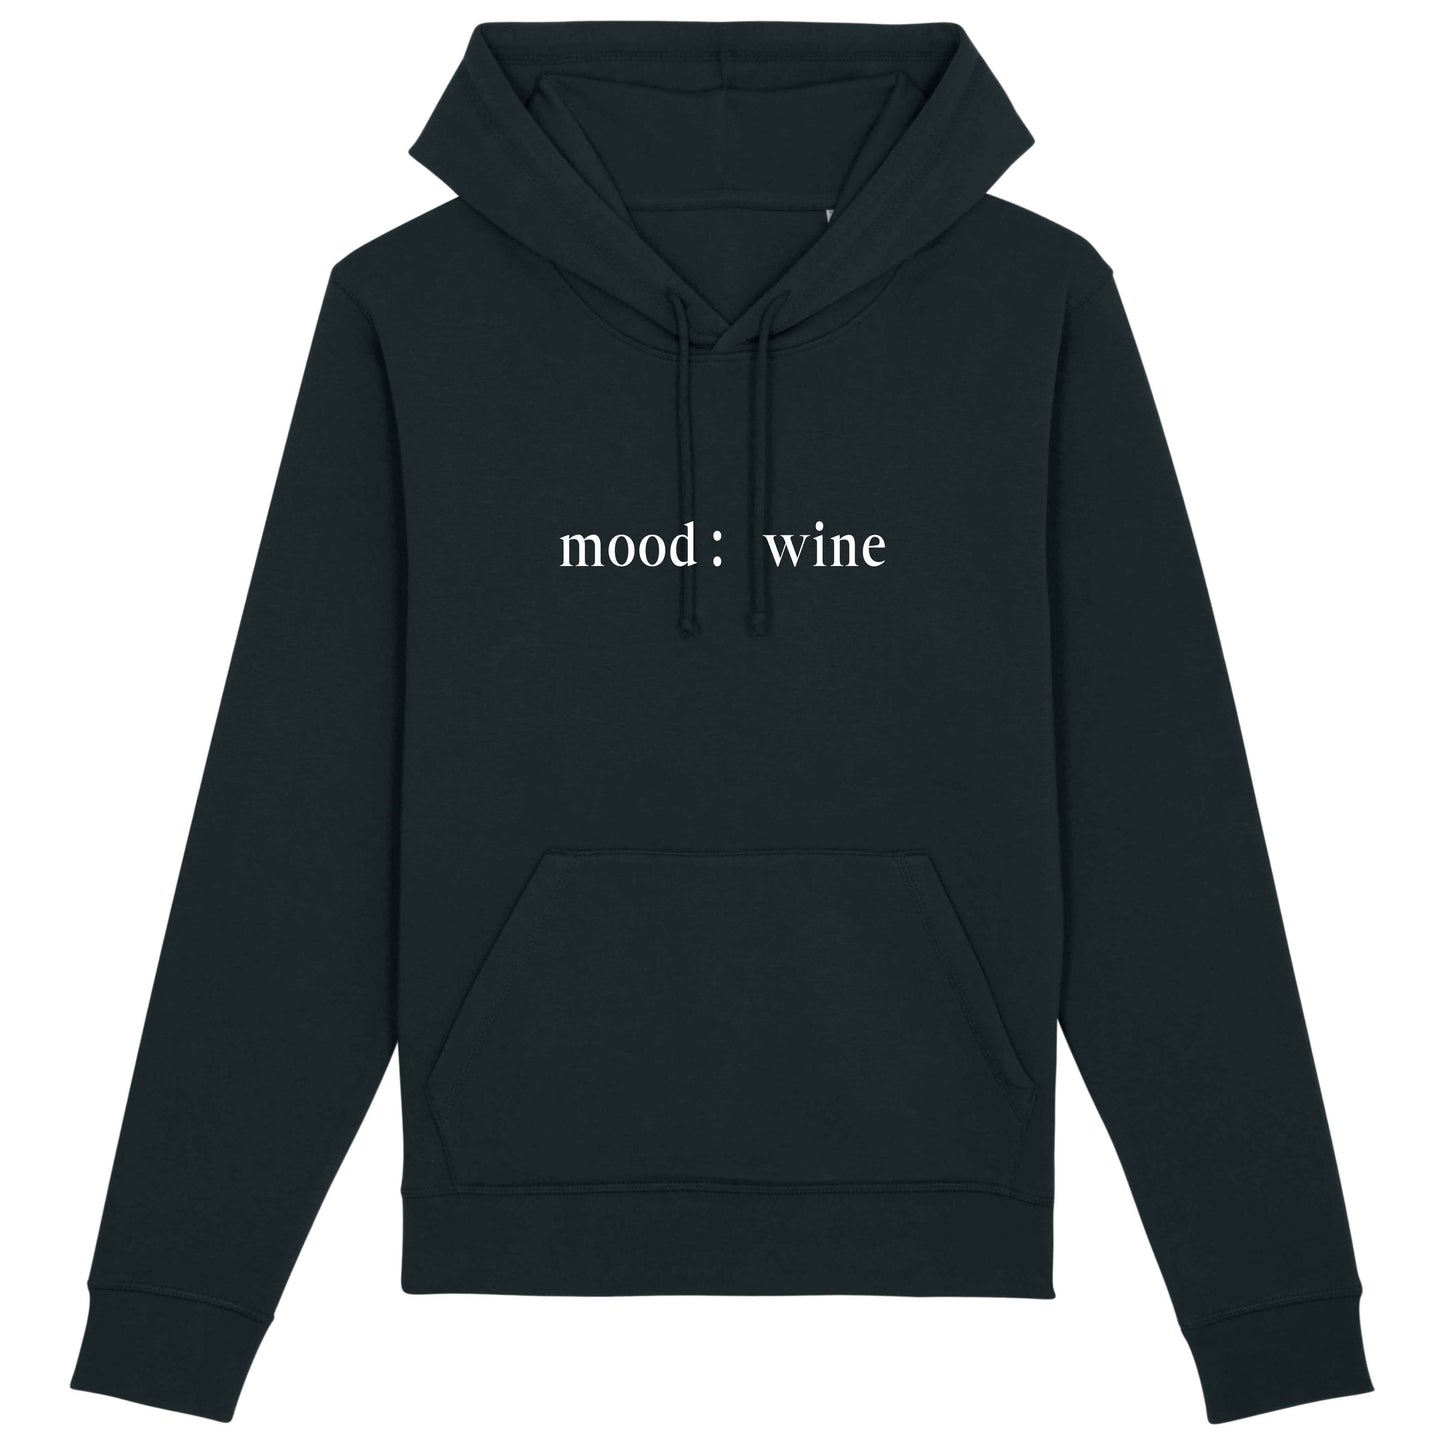 mood: wine - Unisex Organic Hoodie